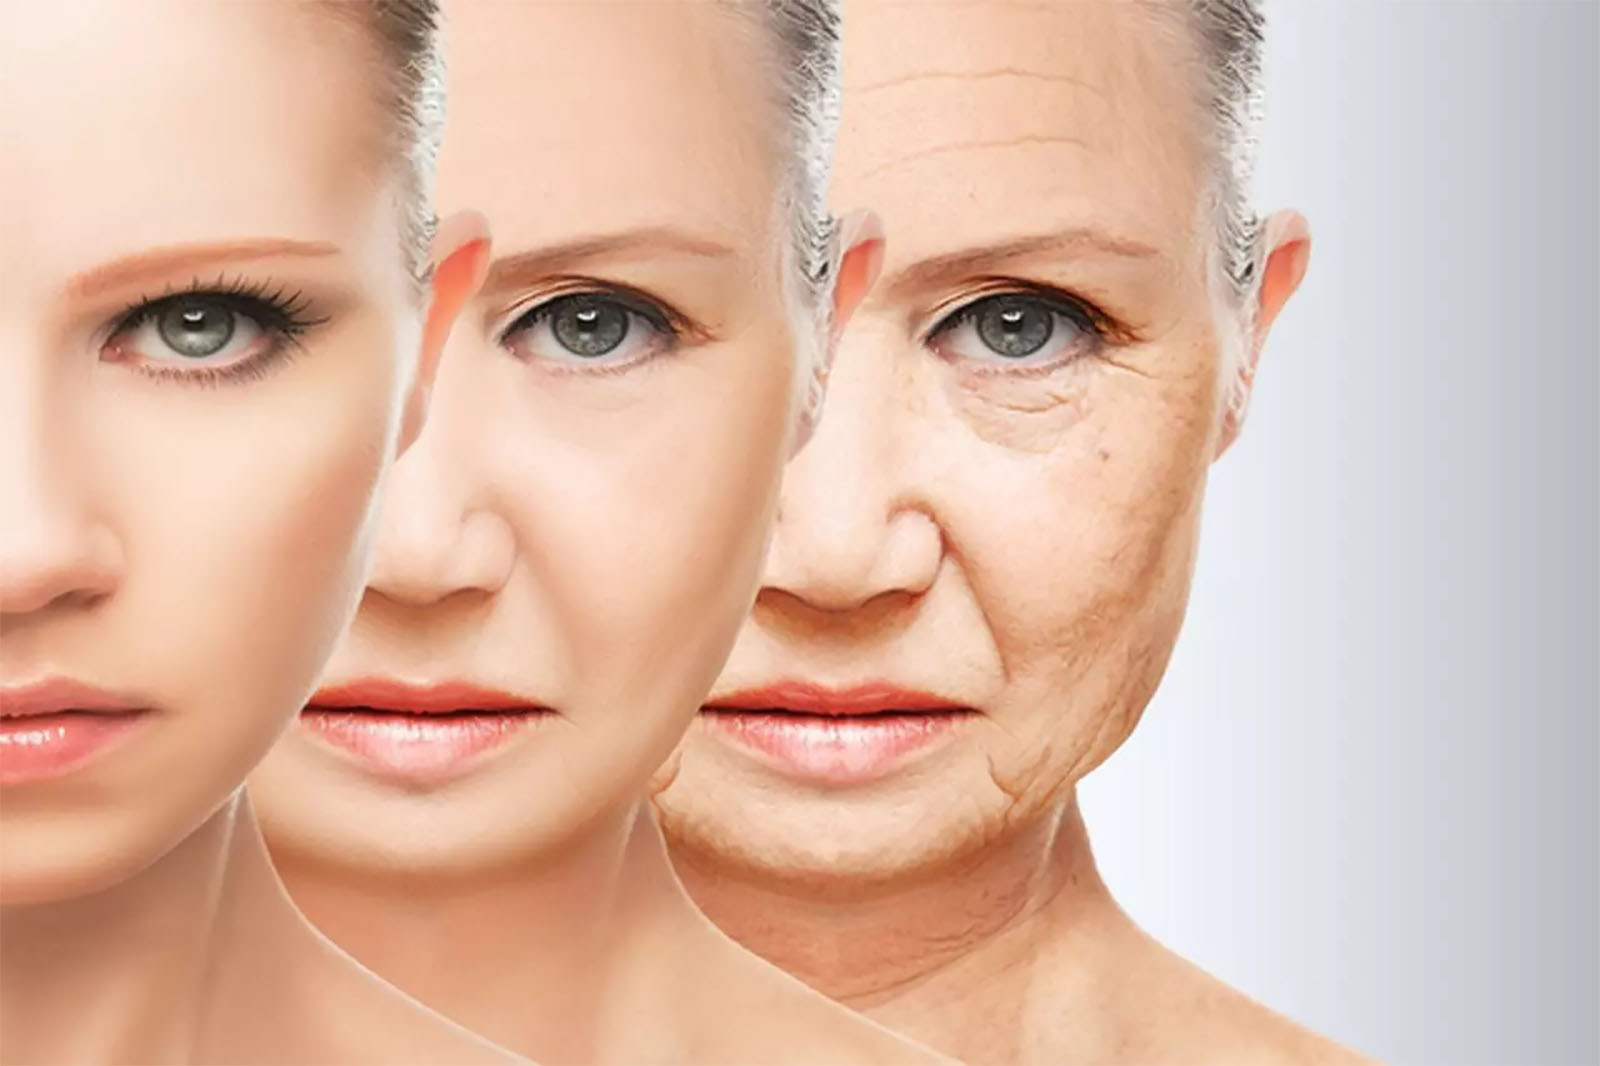 عملية الشيخوخة هي حقيقة بيولوجية لها طريقتها المعينة في الحدوث خارج نطاق التحكم البشري (تواصل اجتماعي)